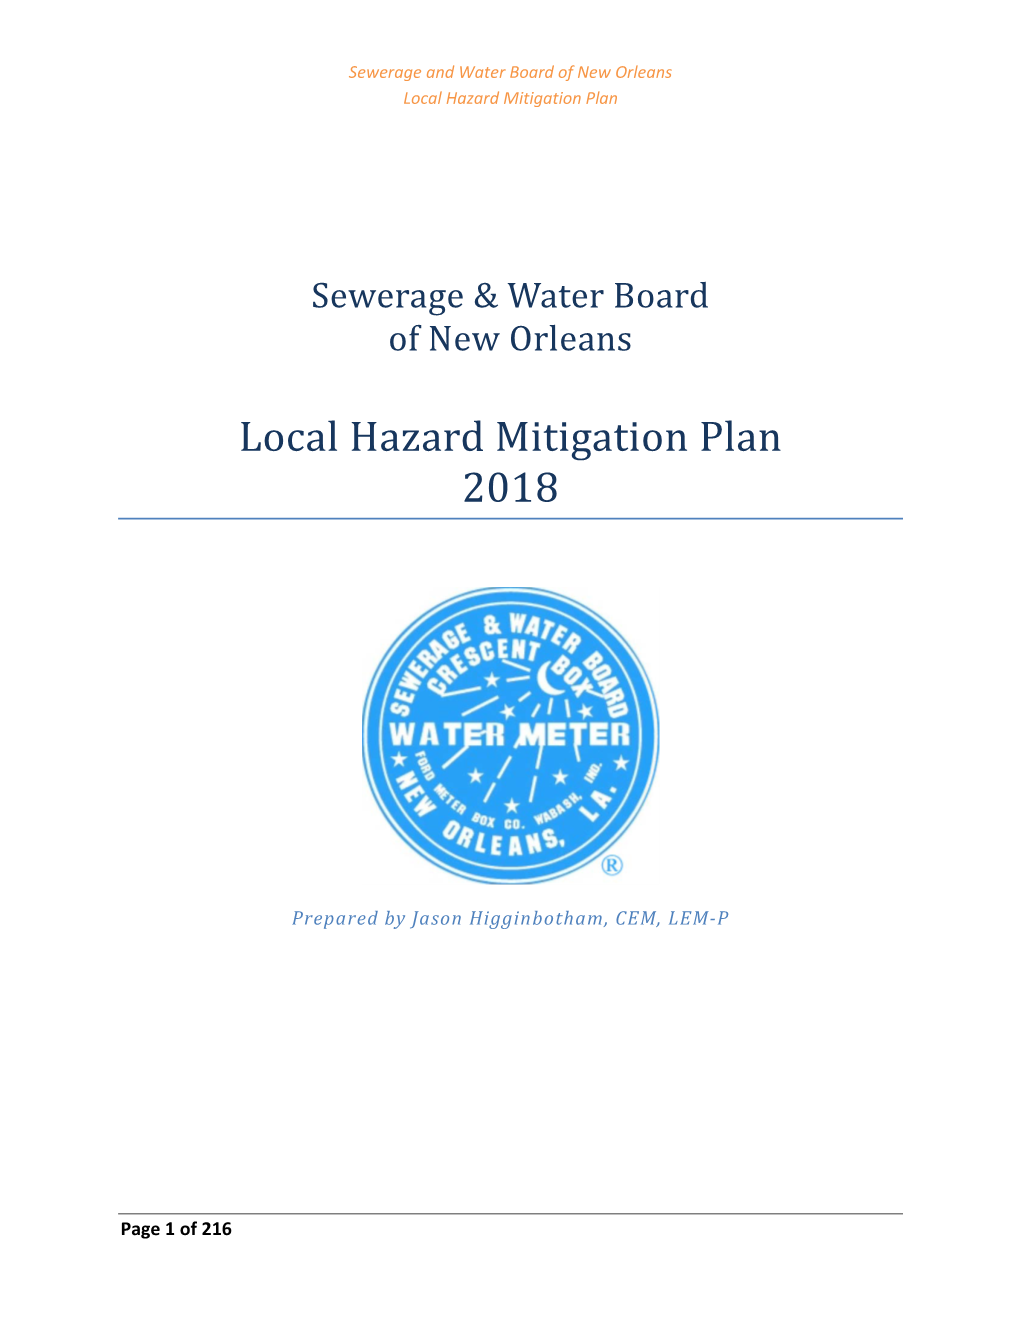 Local Hazard Mitigation Plan 2018